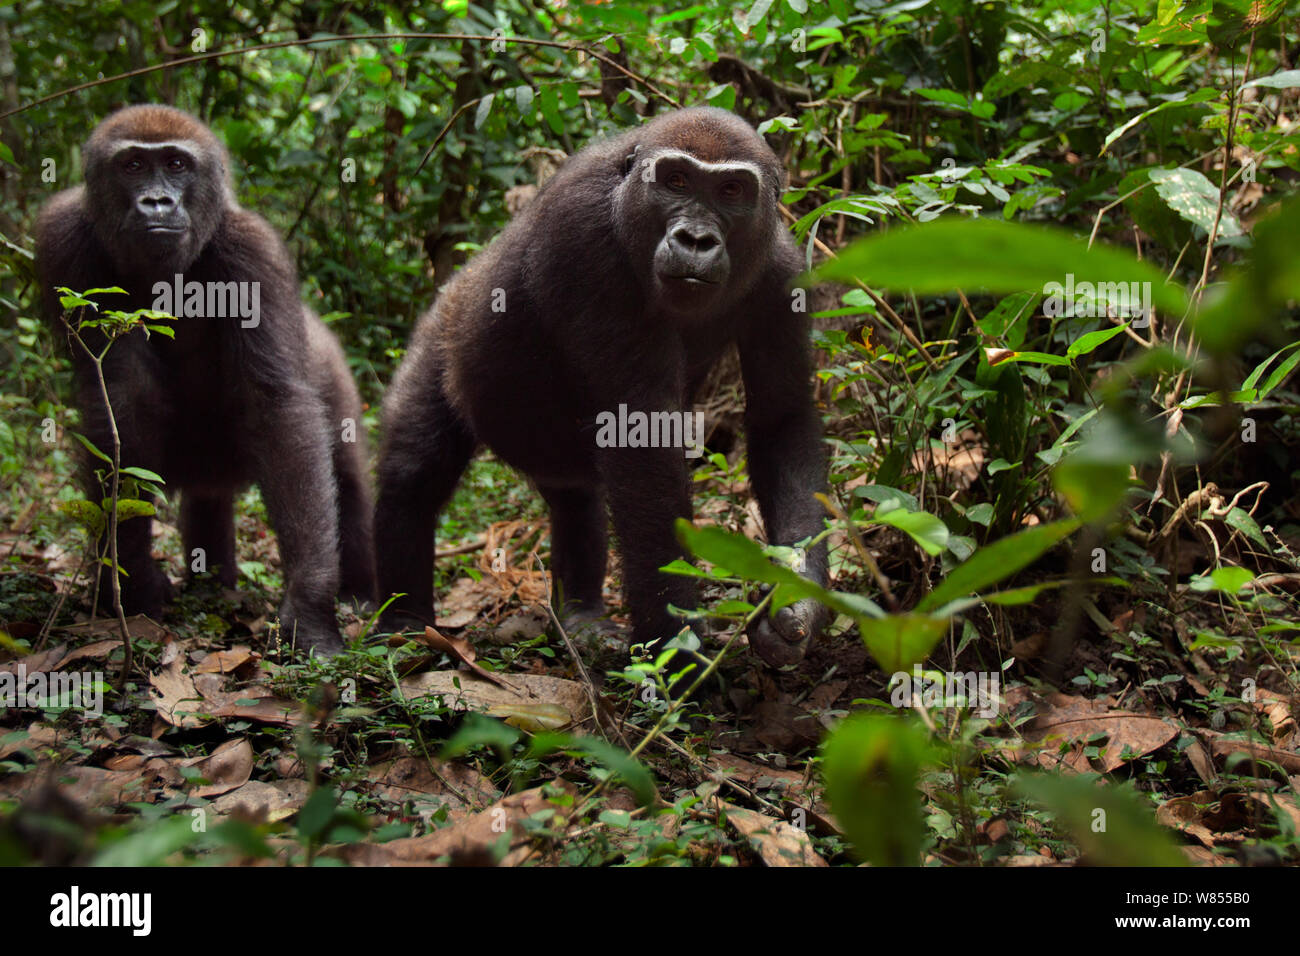 Gorille de plaine de l'ouest (Gorilla gorilla gorilla) femelle 'Mosoko' âgés de 8 ans et mâle juvénile 'Mobangi" de 5 ans approche avec curiosité, Bai Hokou, Spécial forêt dense de Dzanga Sangha, République centrafricaine. Décembre 2011. Banque D'Images